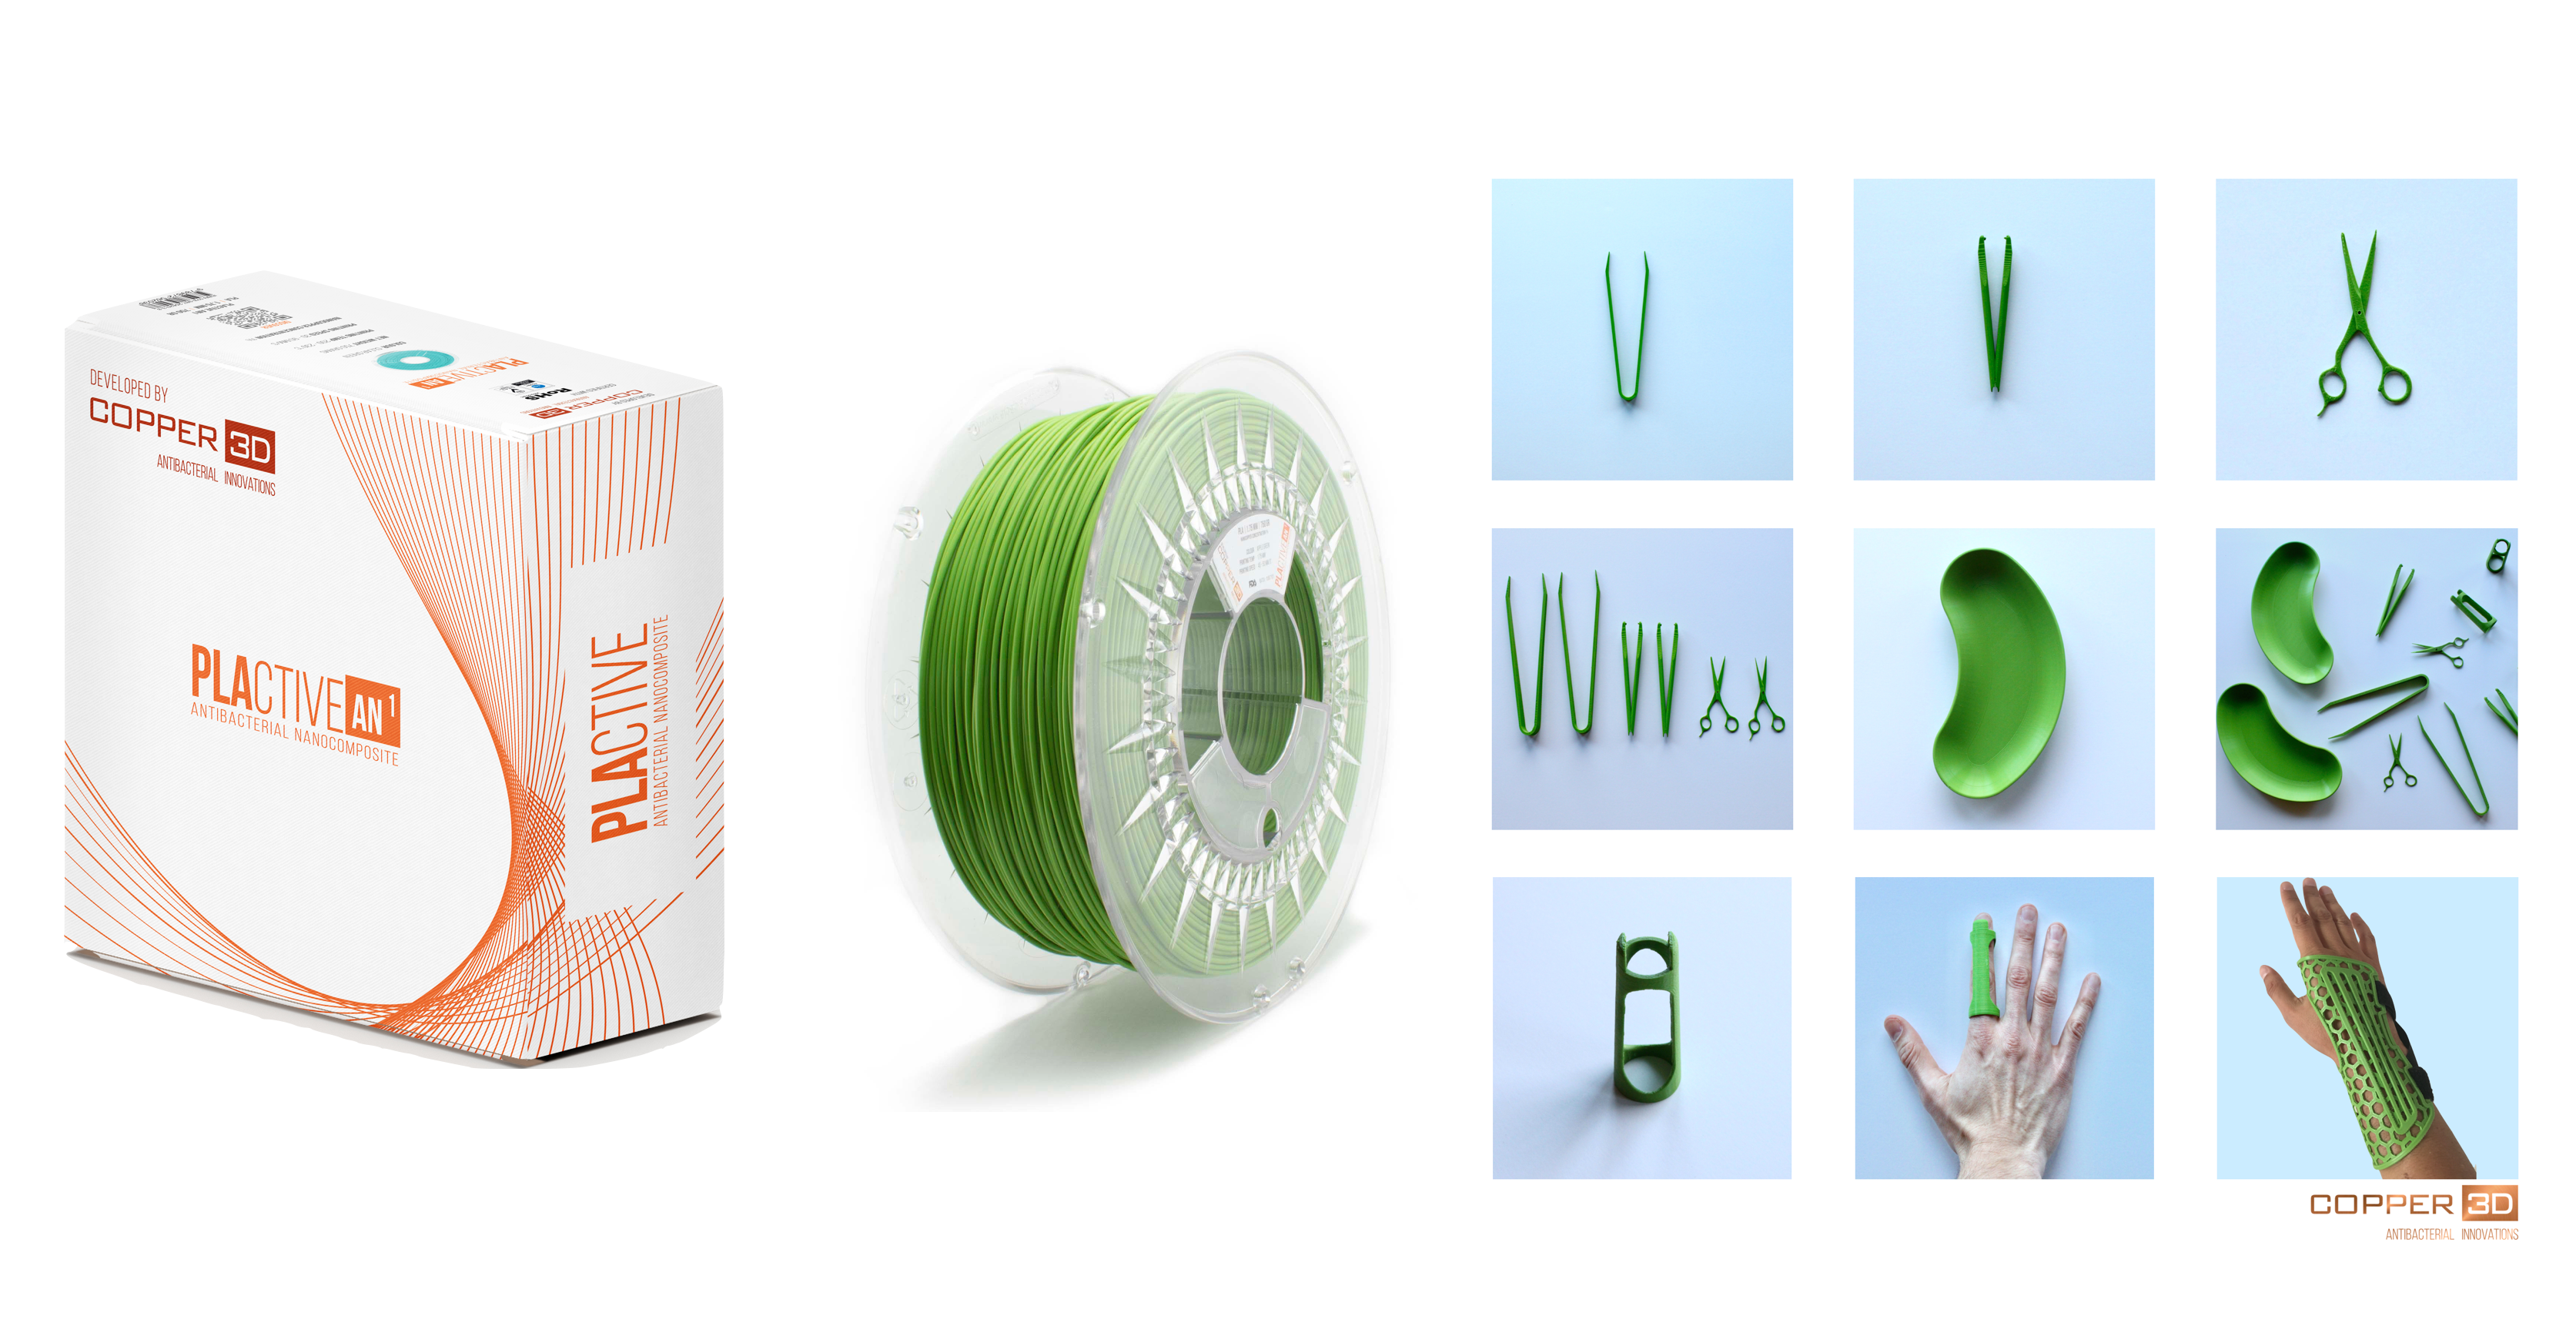 PLA Filament Copper 3D PLActive - Innovative Antibacterial 1.75mm 750gram Apple Green Color 3D Printer Filament